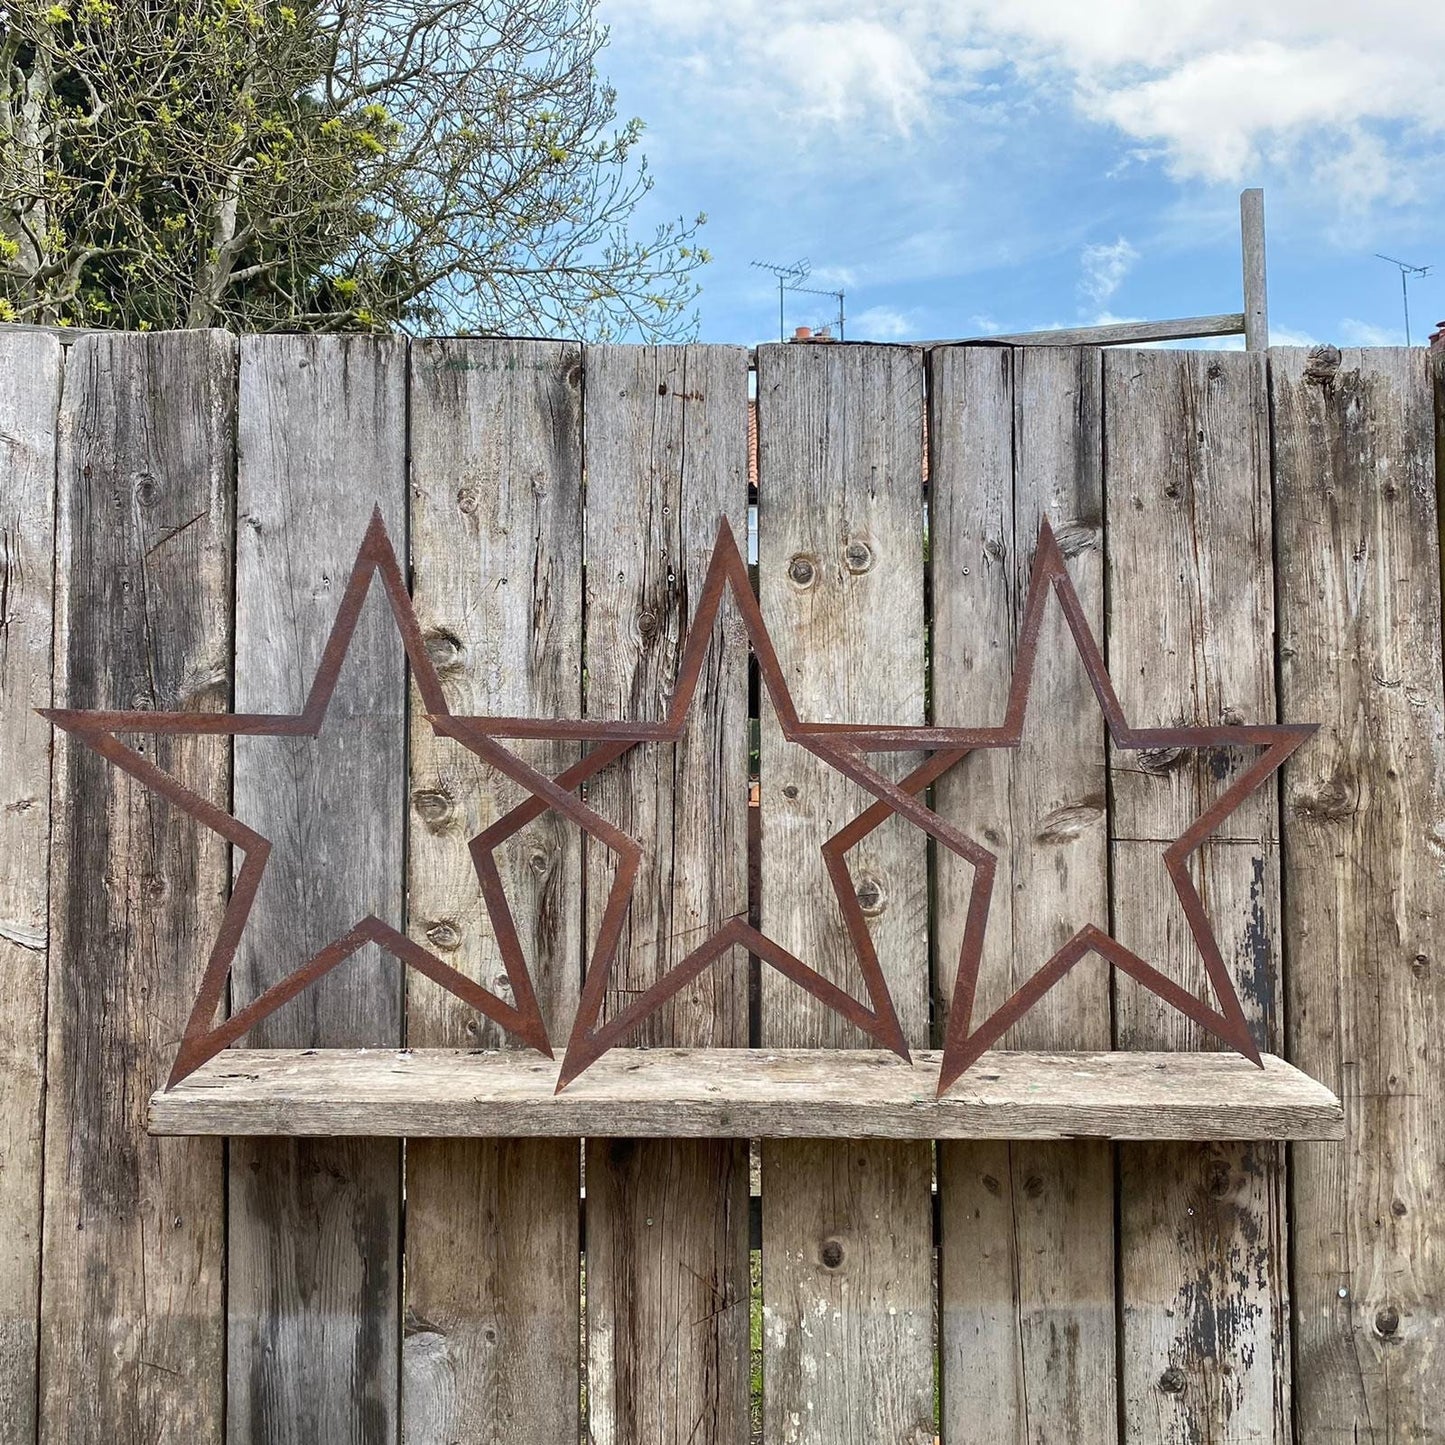 3x rusty metal hollow stars decorations- 70cms tall